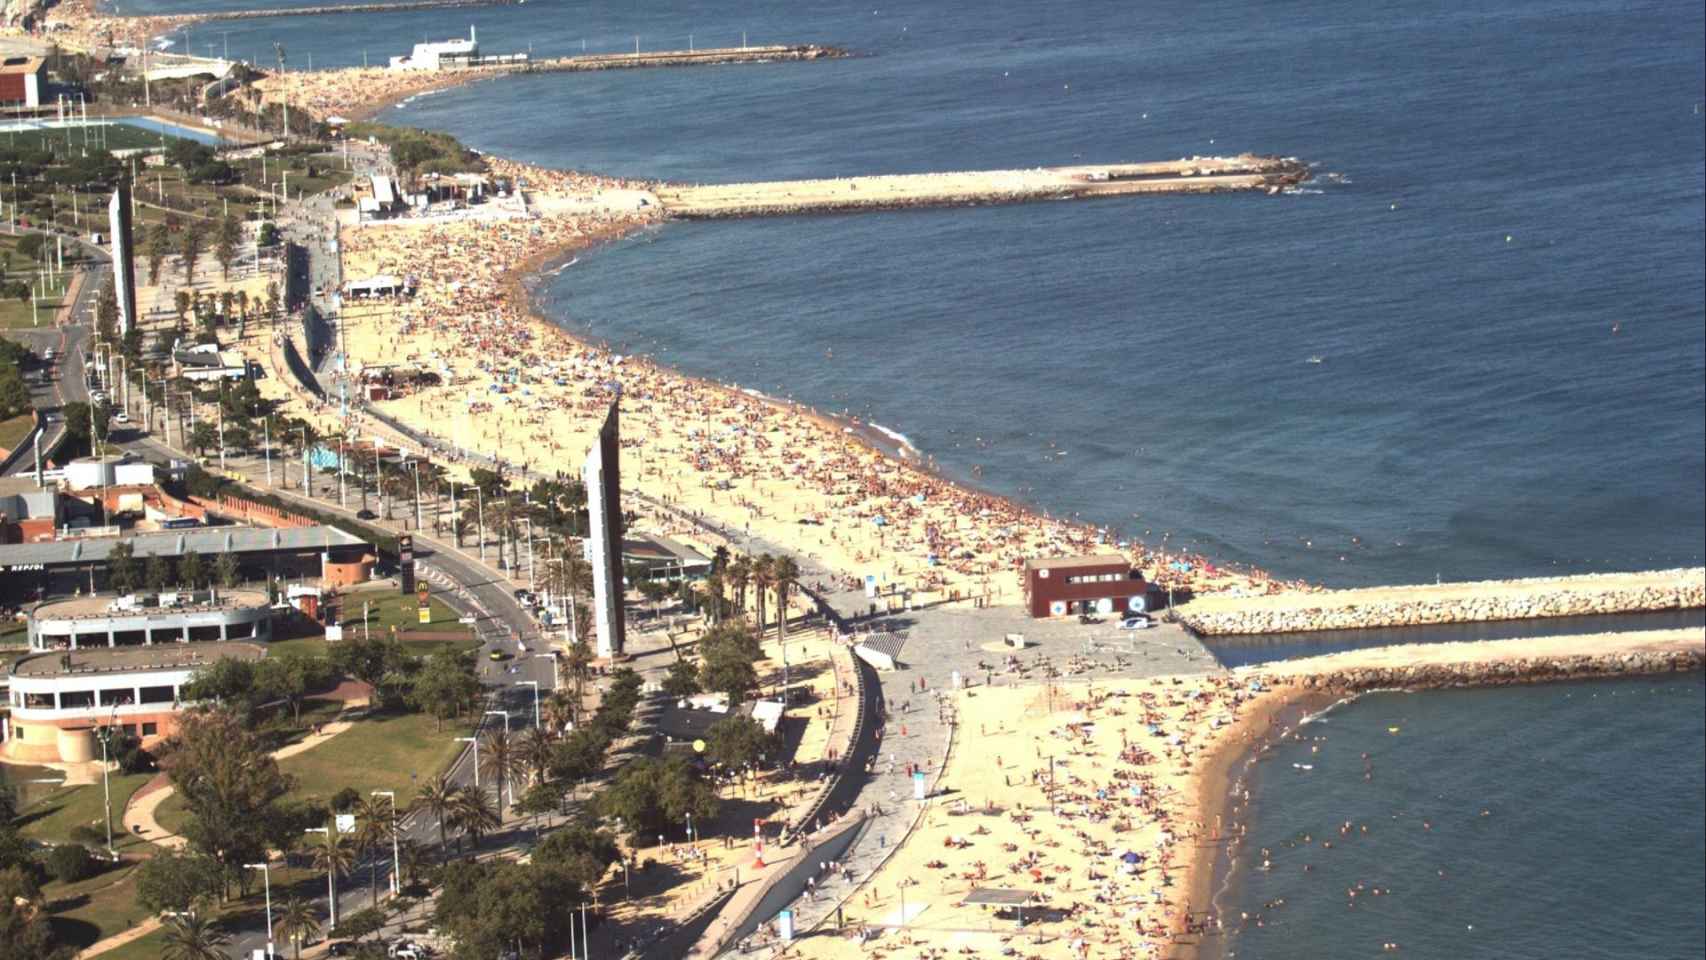 Vista panorámica de la playa del Bogatell de Barcelona